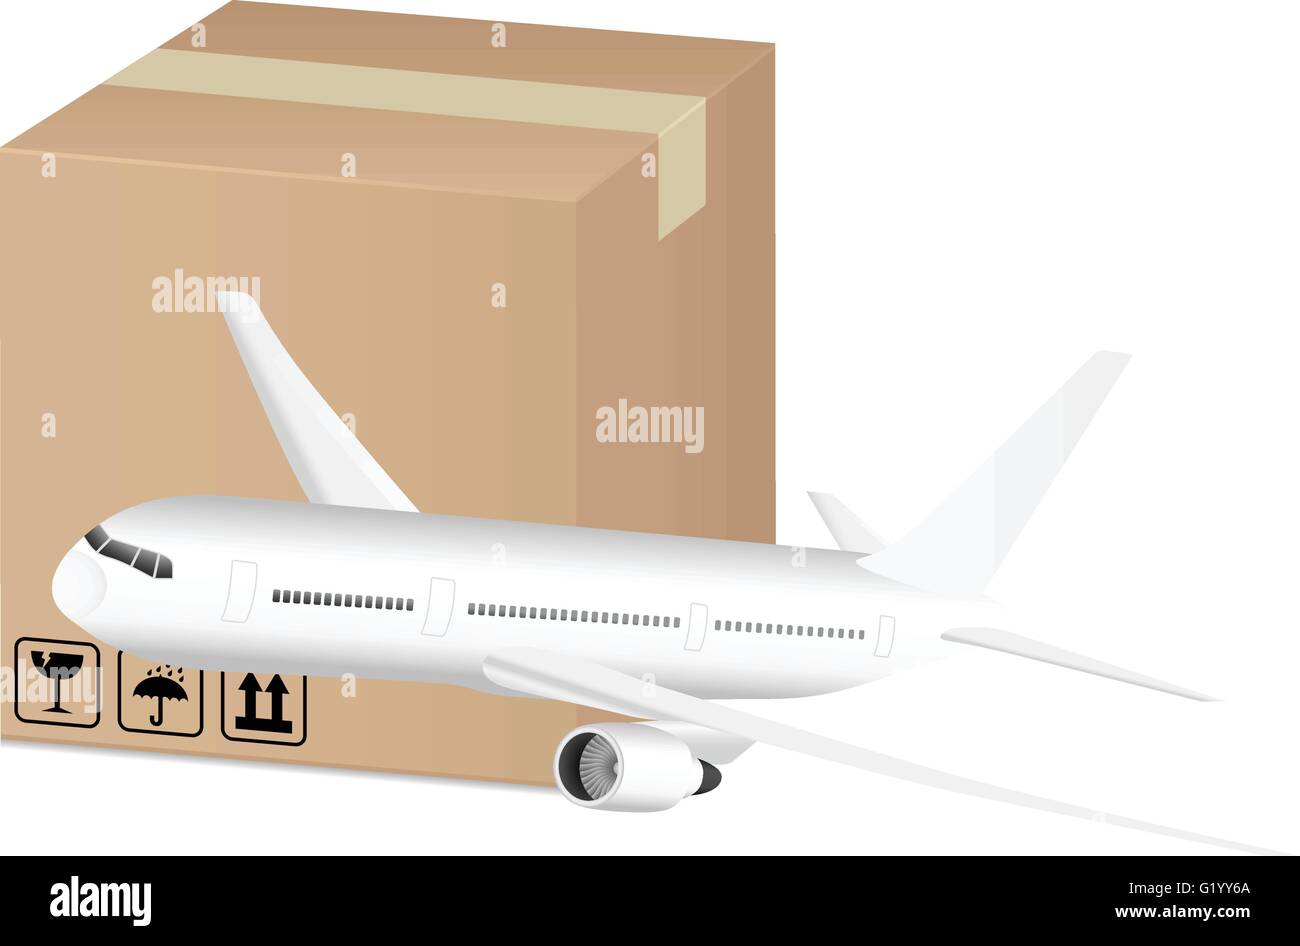 Box und Flugzeug auf einem weißen Hintergrund. Stock Vektor